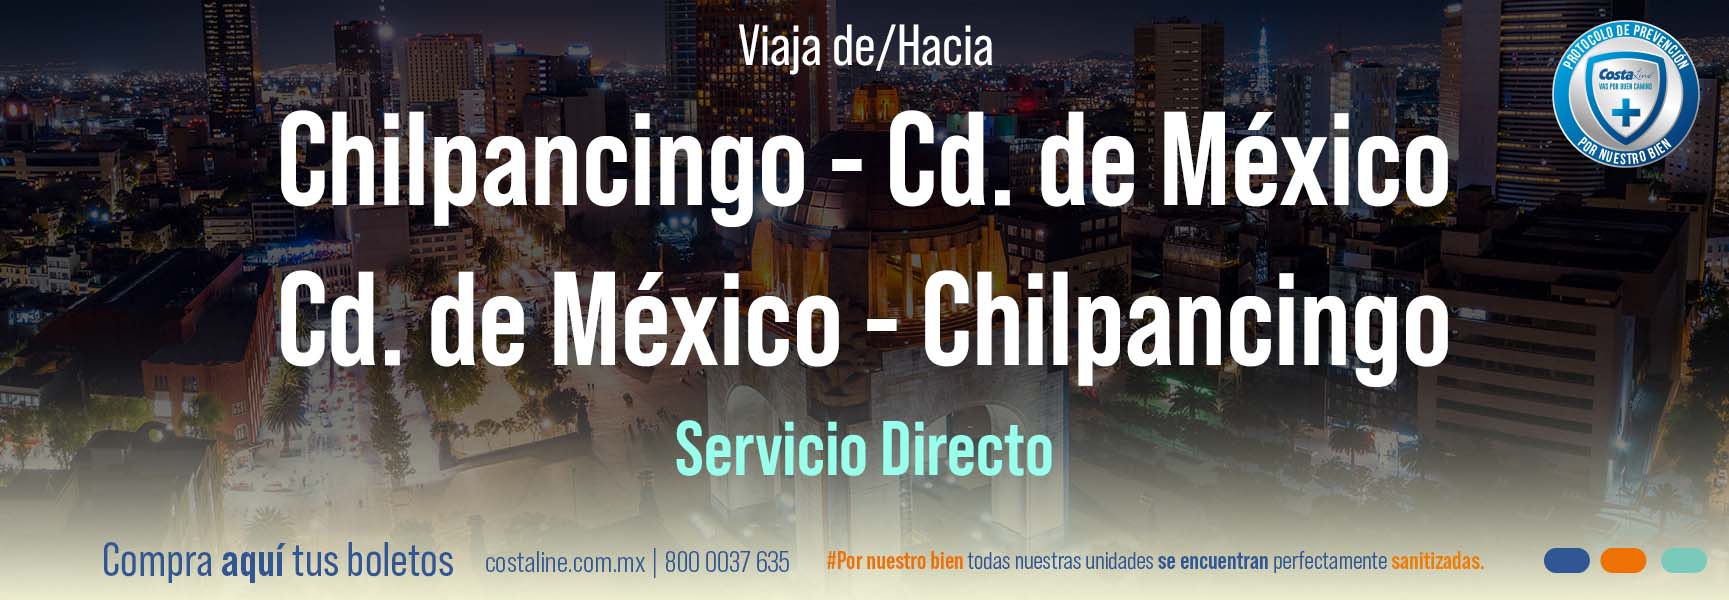 Viaja en servicio directo de Chilpancigo a la Ciudad de México.